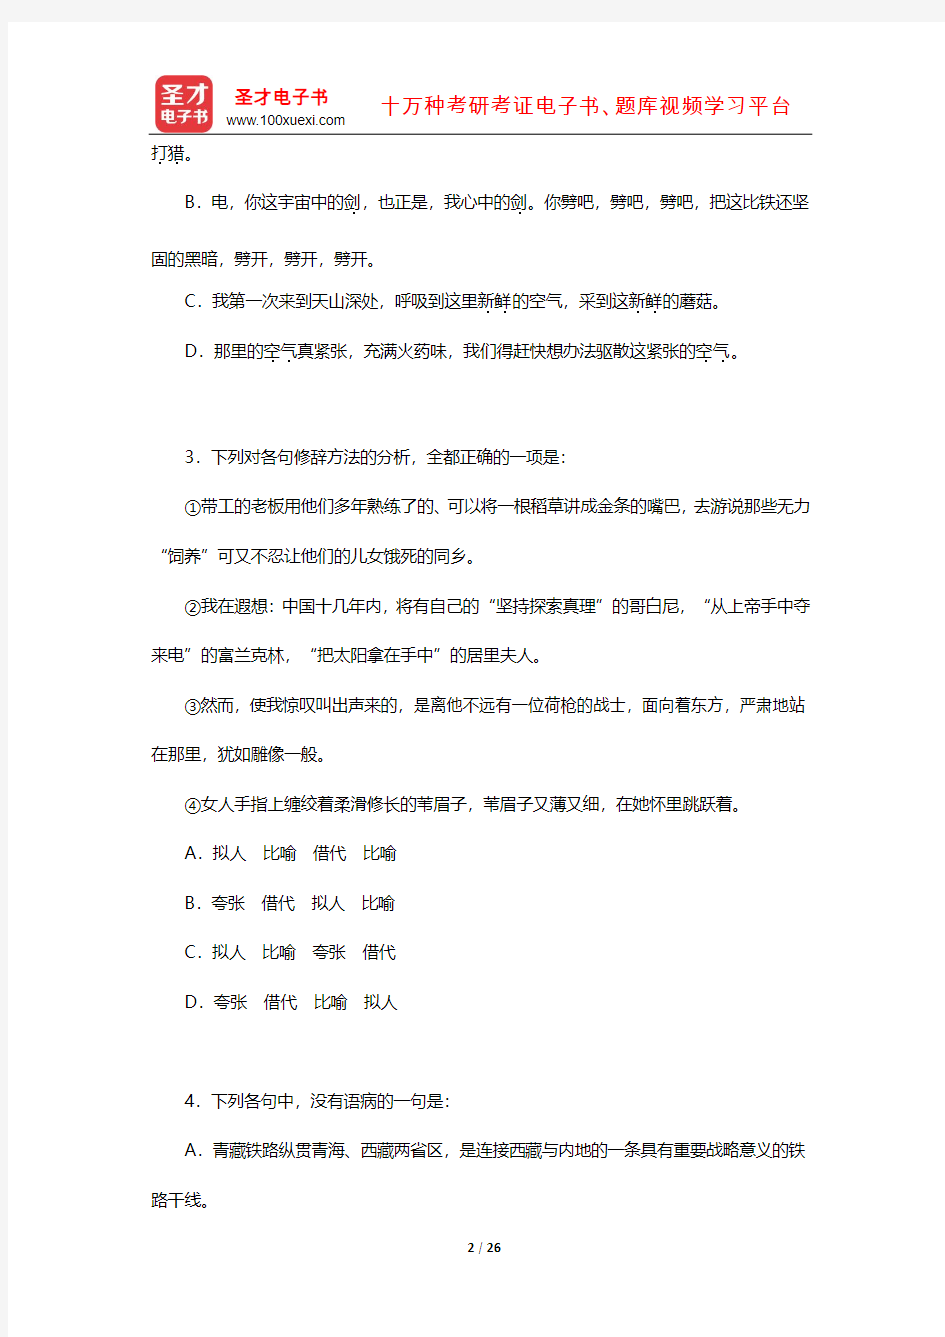 2012年北京航空航天大学448汉语写作与百科知识[专业硕士]考研真题答案